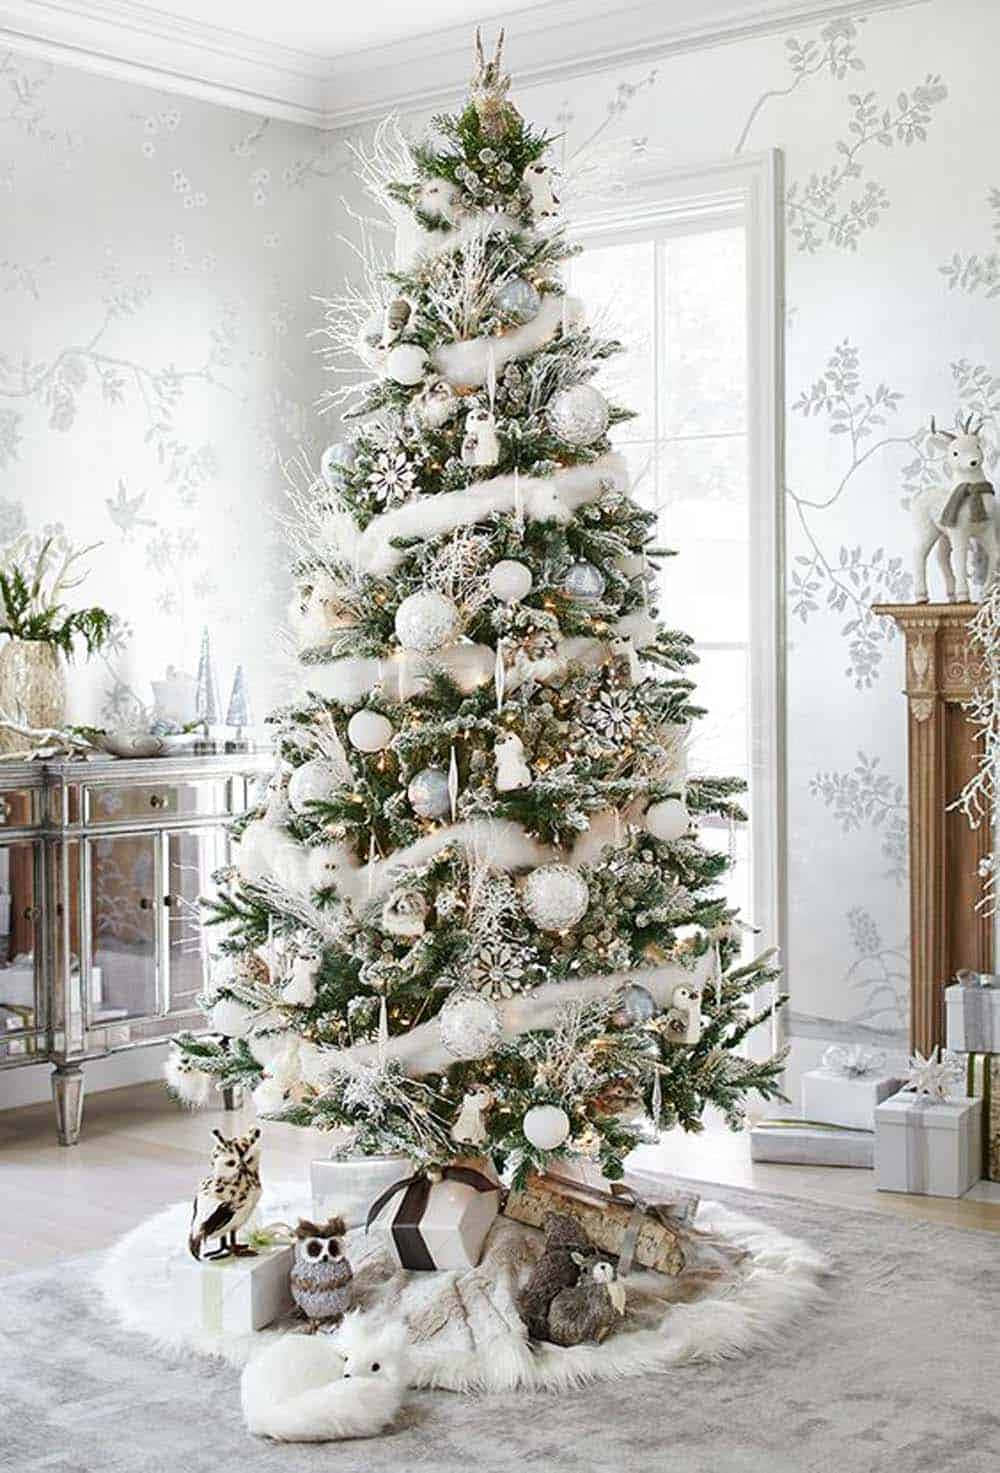 Imagende Un Árbol De Navidad Con Nieve Blanca